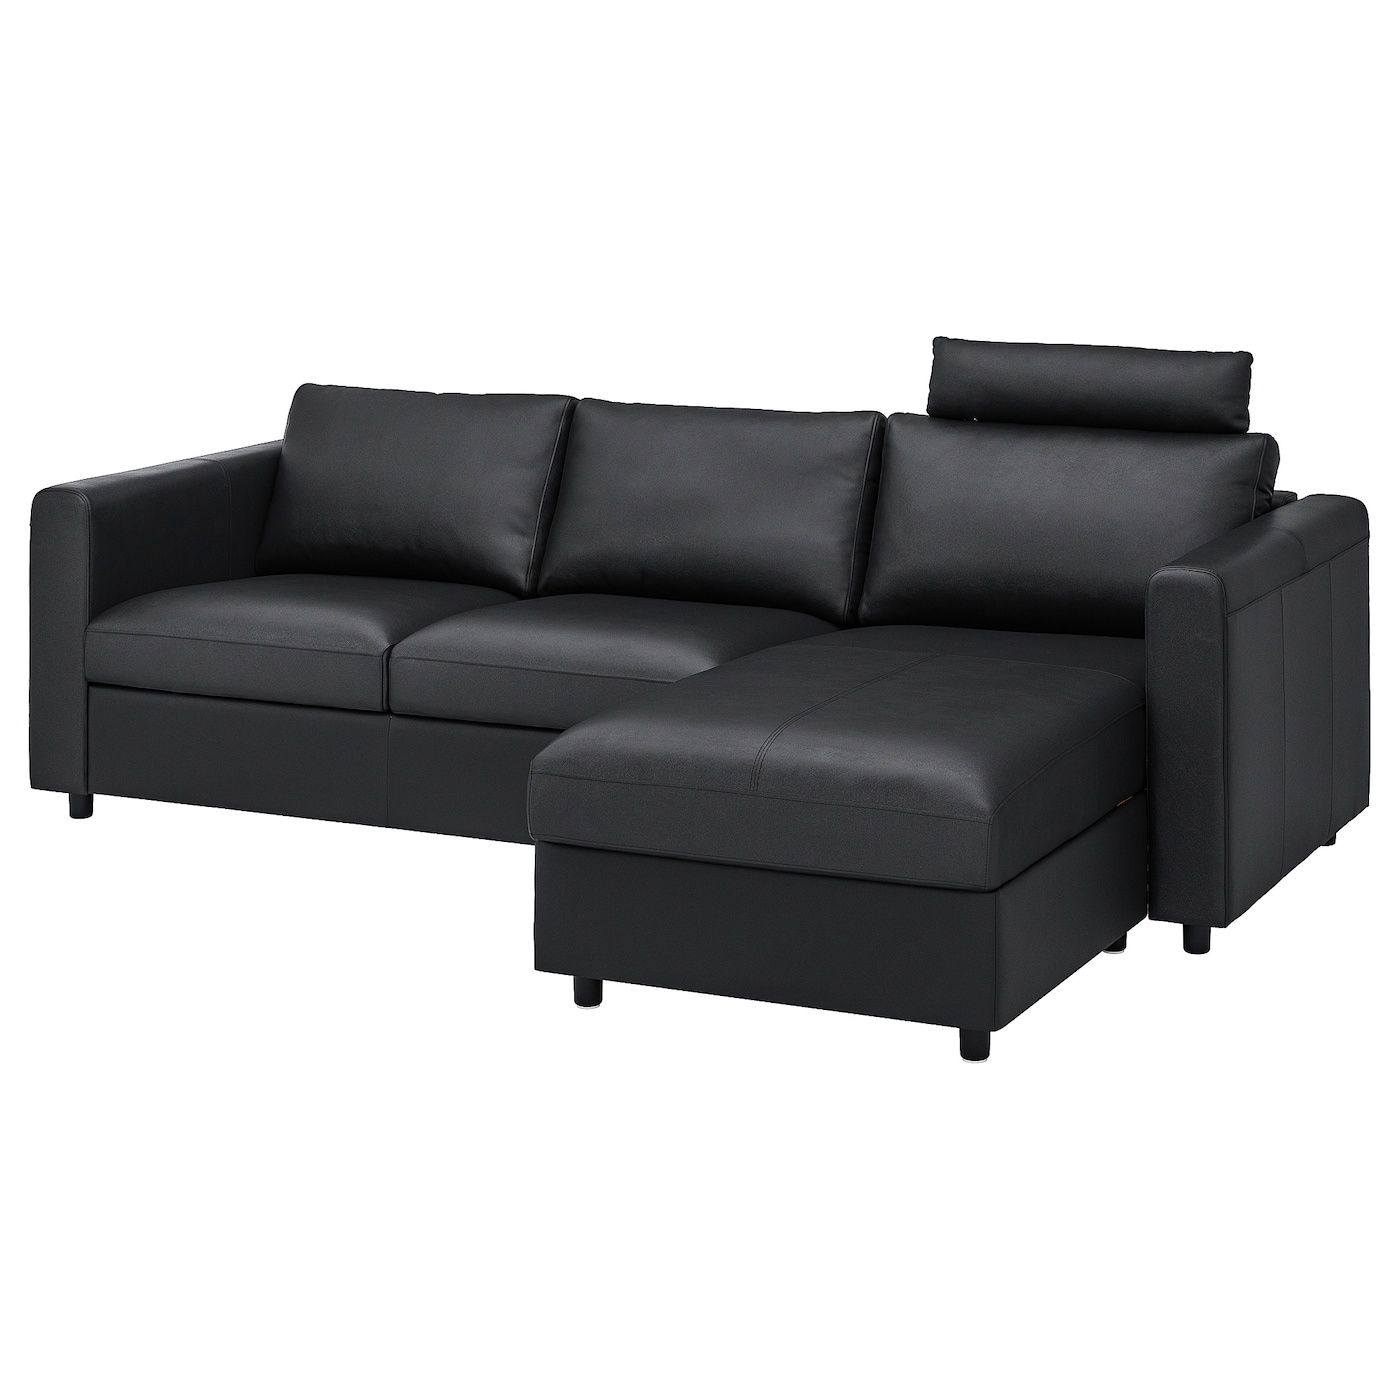 3-местный диван - IKEA VIMLE, 252х98х100 см, черный, кожа, ВИМЛЕ ИКЕА